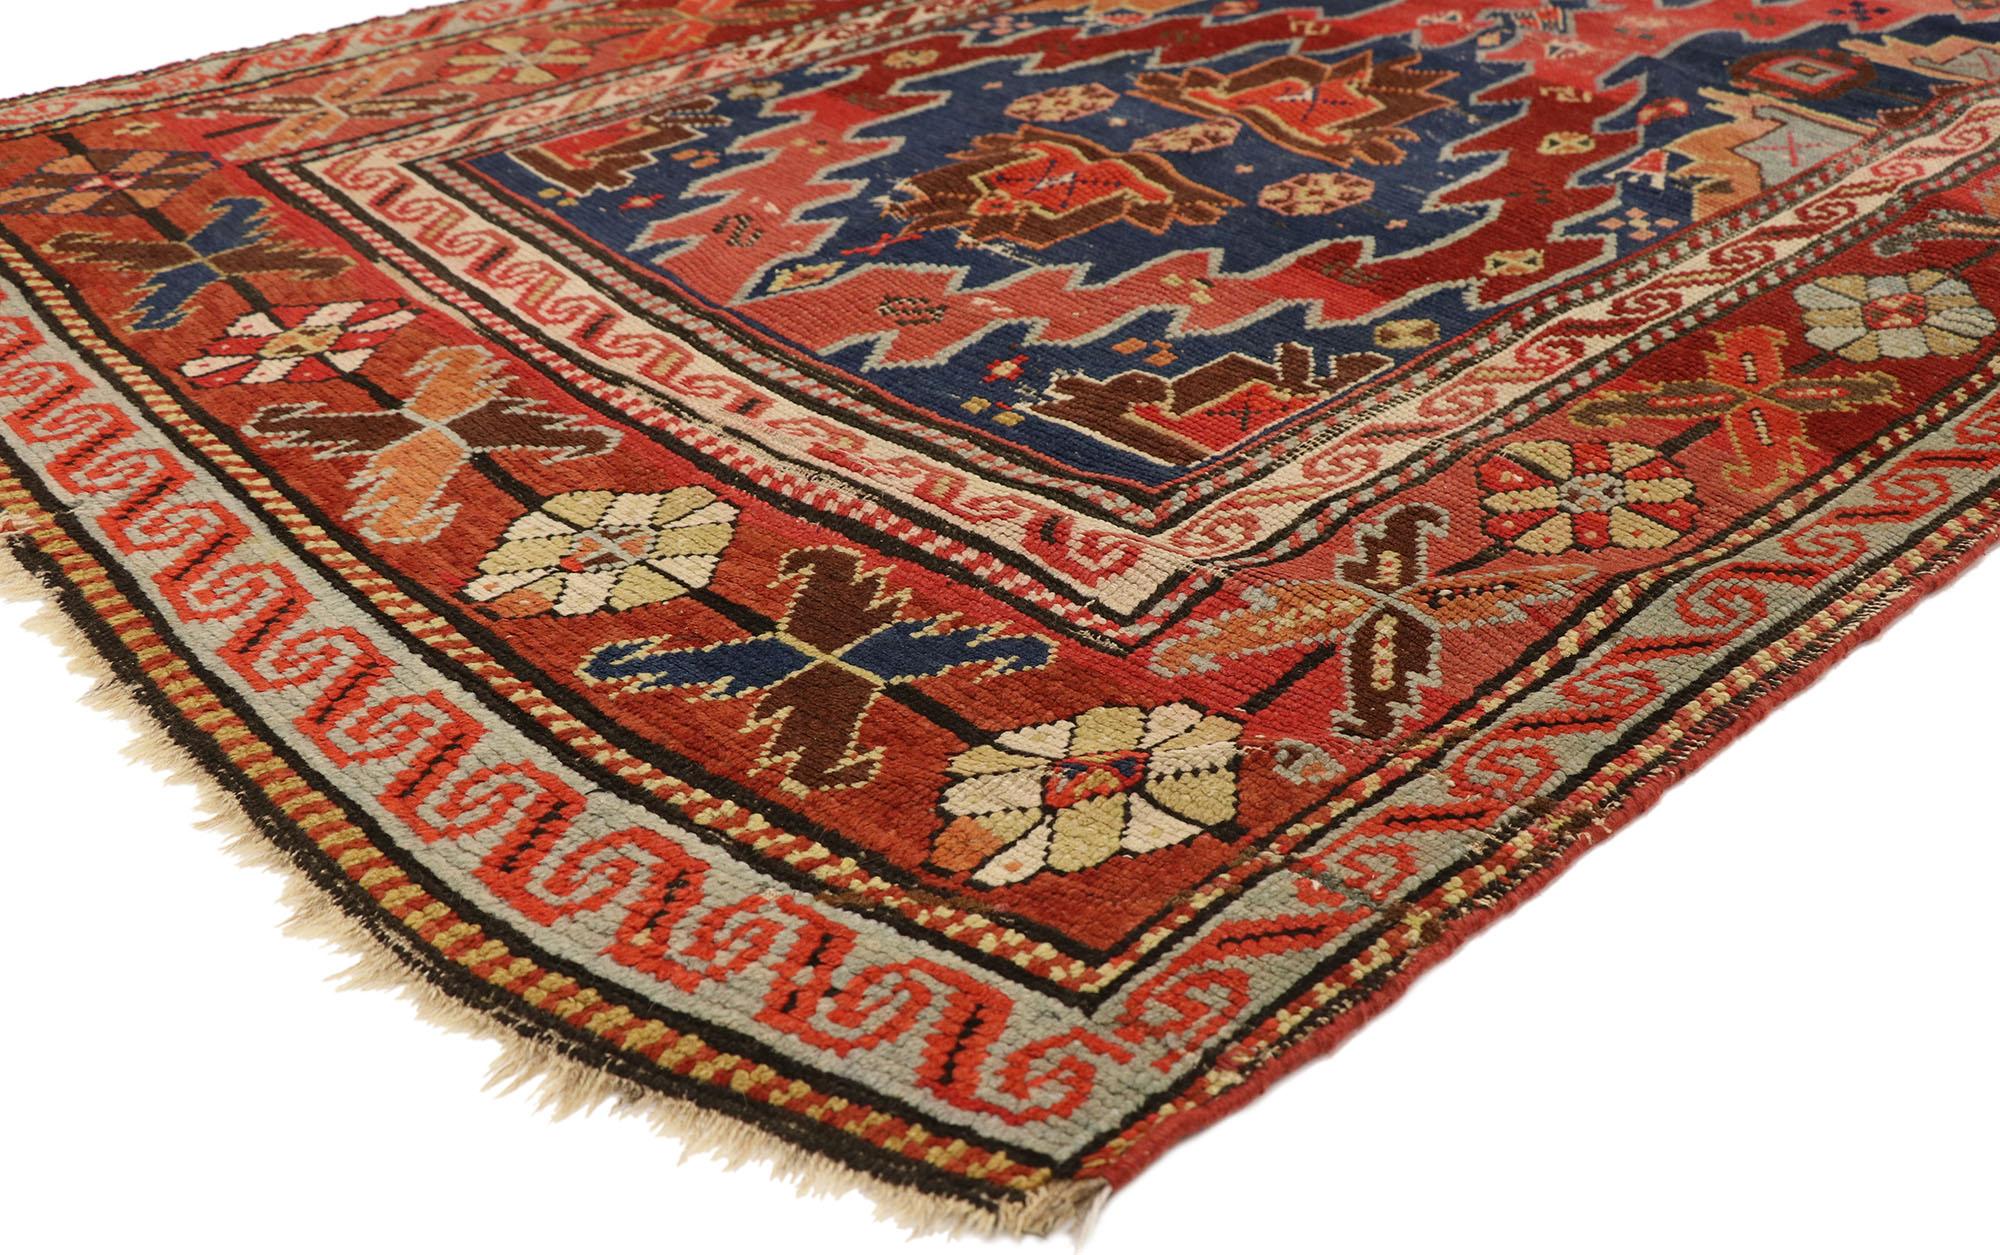 73080 Antiker kaukasischer Kazak-Teppich, 04'00 x 08'00.
Dieser handgeknüpfte antike kaukasische Kazak-Teppich aus Wolle ist kühn und rustikal und weist eine robuste Komposition auf. Zwei gezackte Rautenmedaillons verbinden sich an einem Ende und